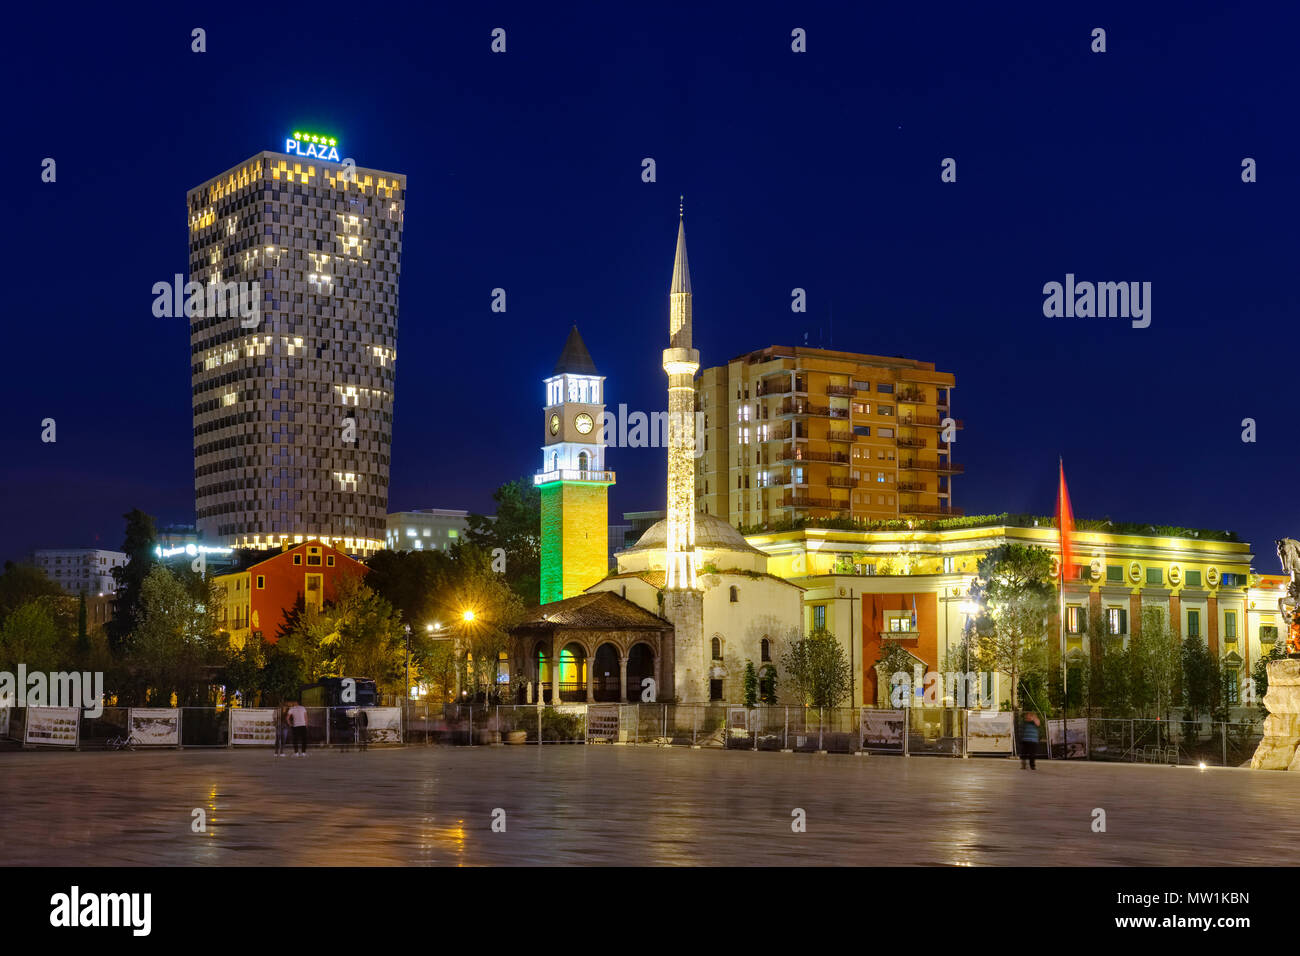 La place Skanderbeg avec TID Tower Hotel Plaza, Ethem Bey mosquée et tour de l'horloge, vision de nuit, Tirana, Albanie Banque D'Images